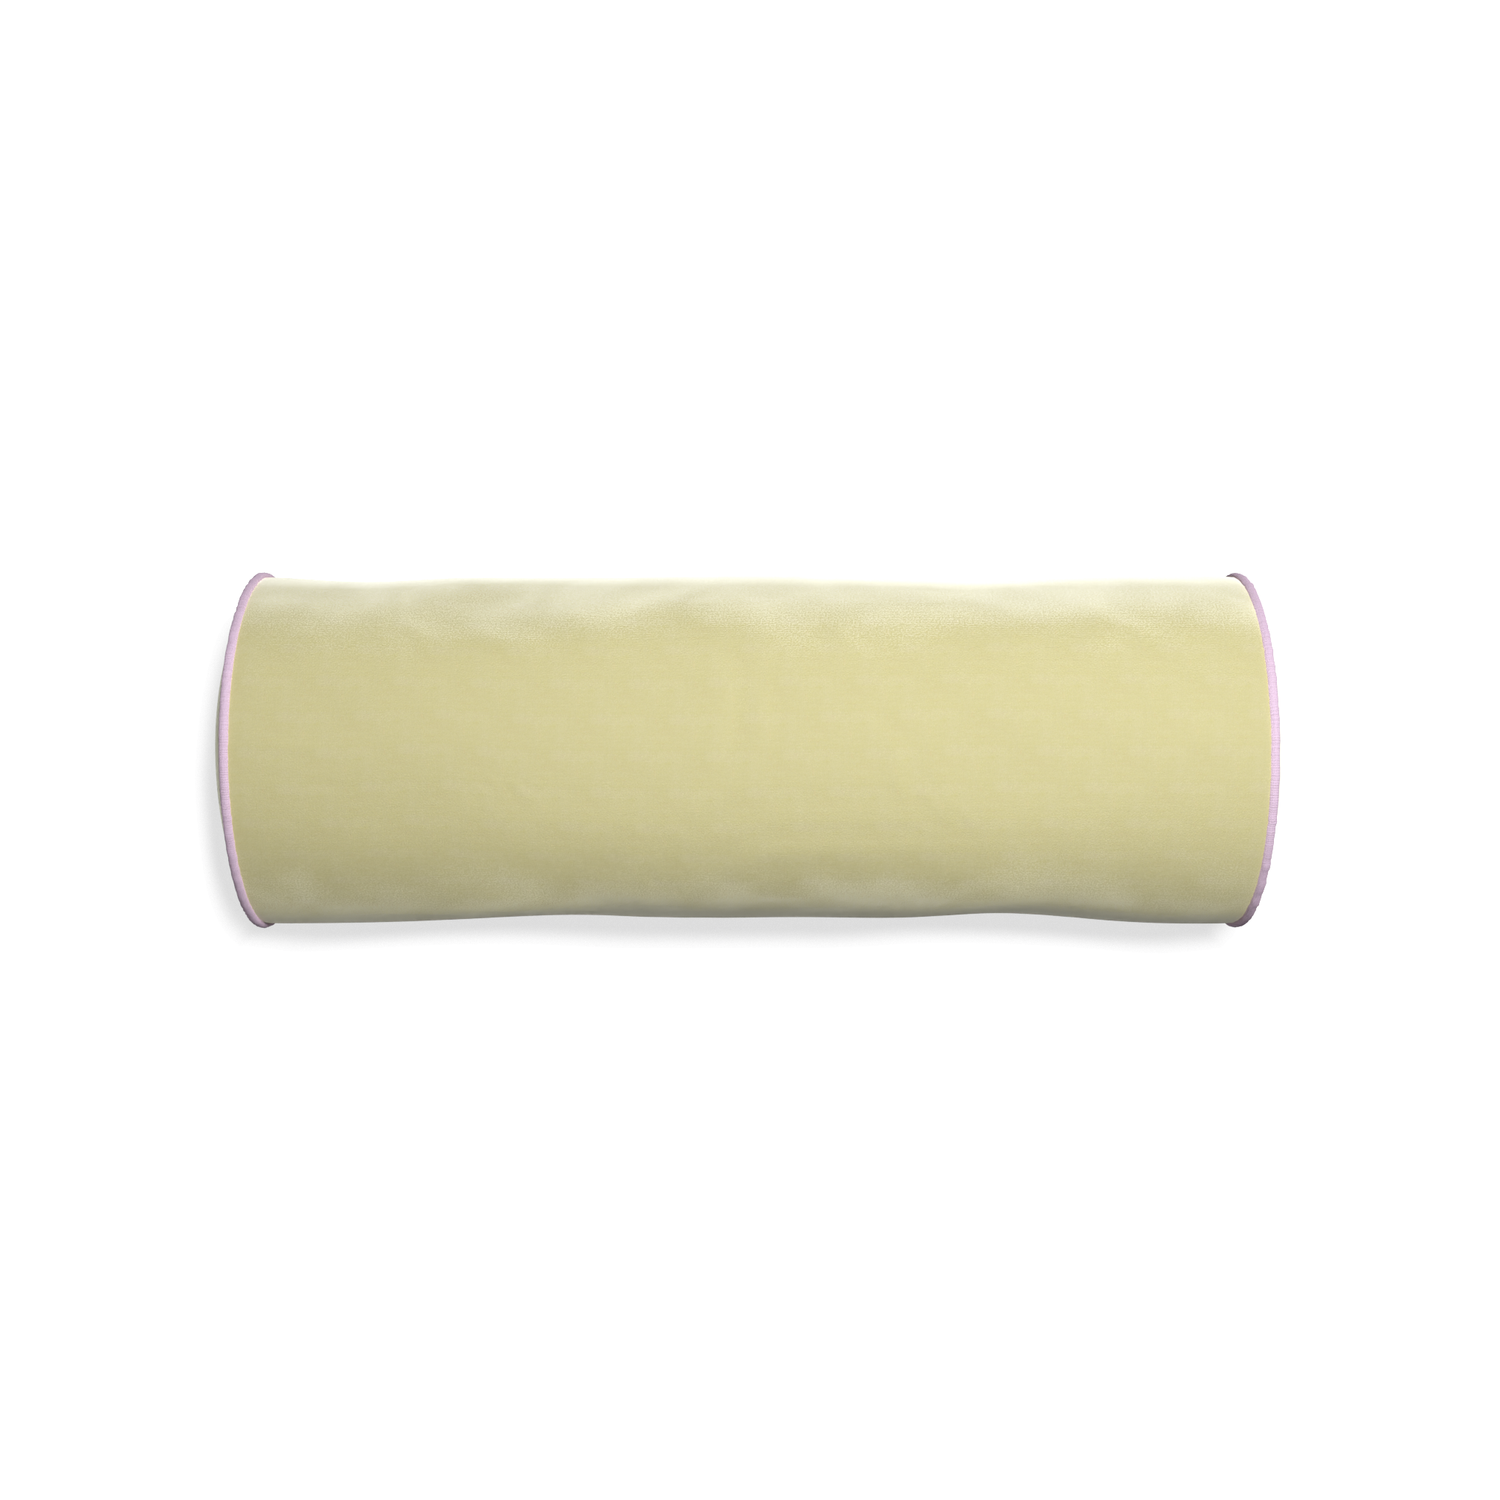 Bolster pear velvet custom pillow with l piping on white background